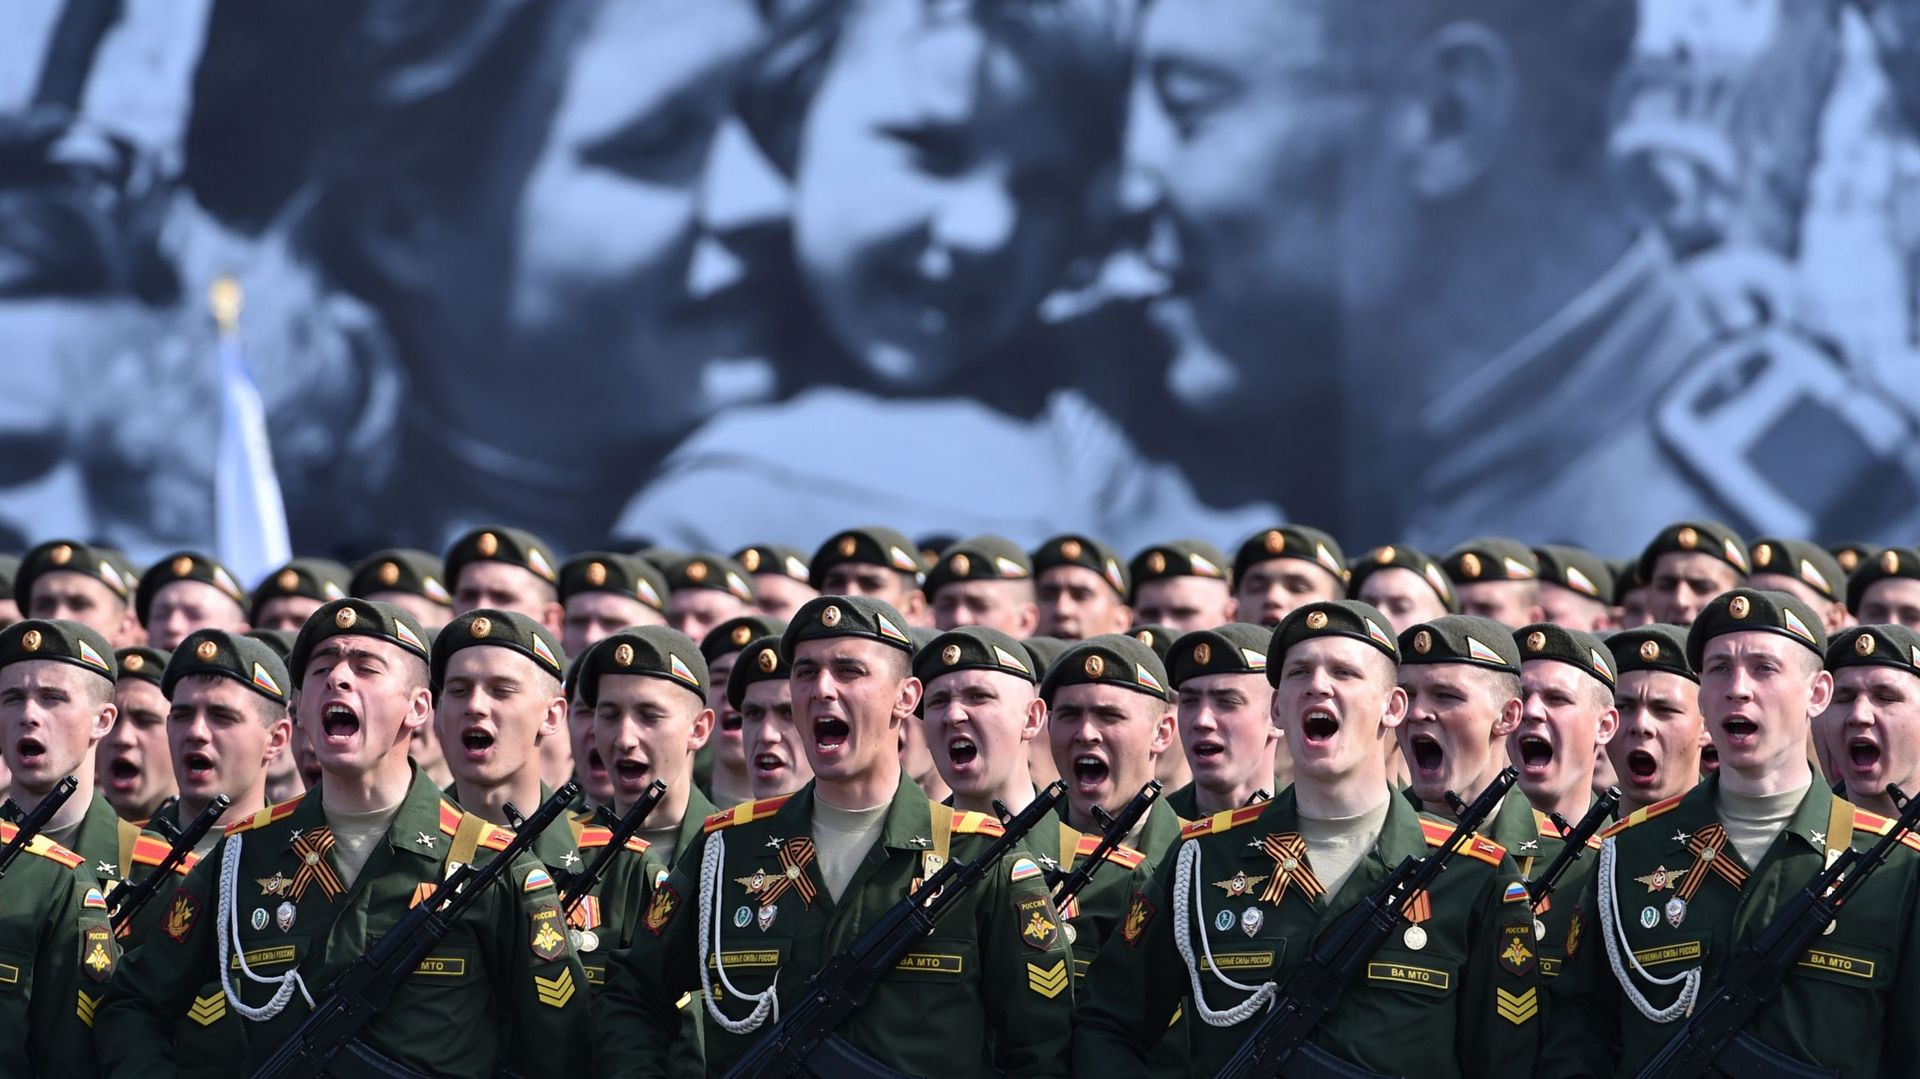 Des soldats russes se préparent aux célébrations de la fin de la Seconde Guerre Mondiale sur la place Rouge à Moscou le 9 mai 2015.